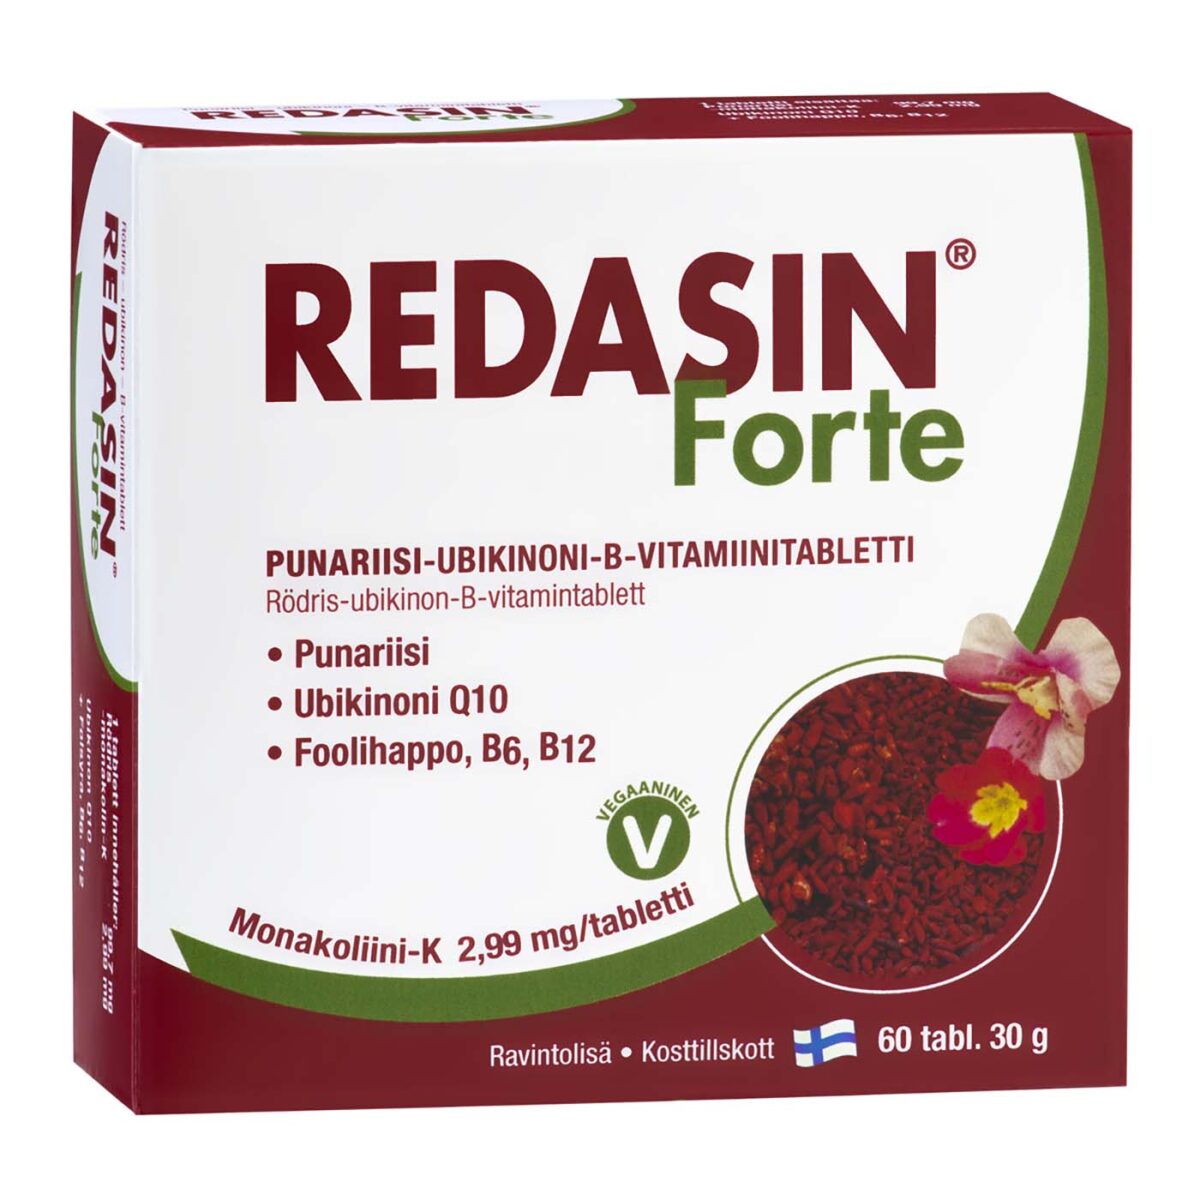 Redasin Forte red ryce supplement